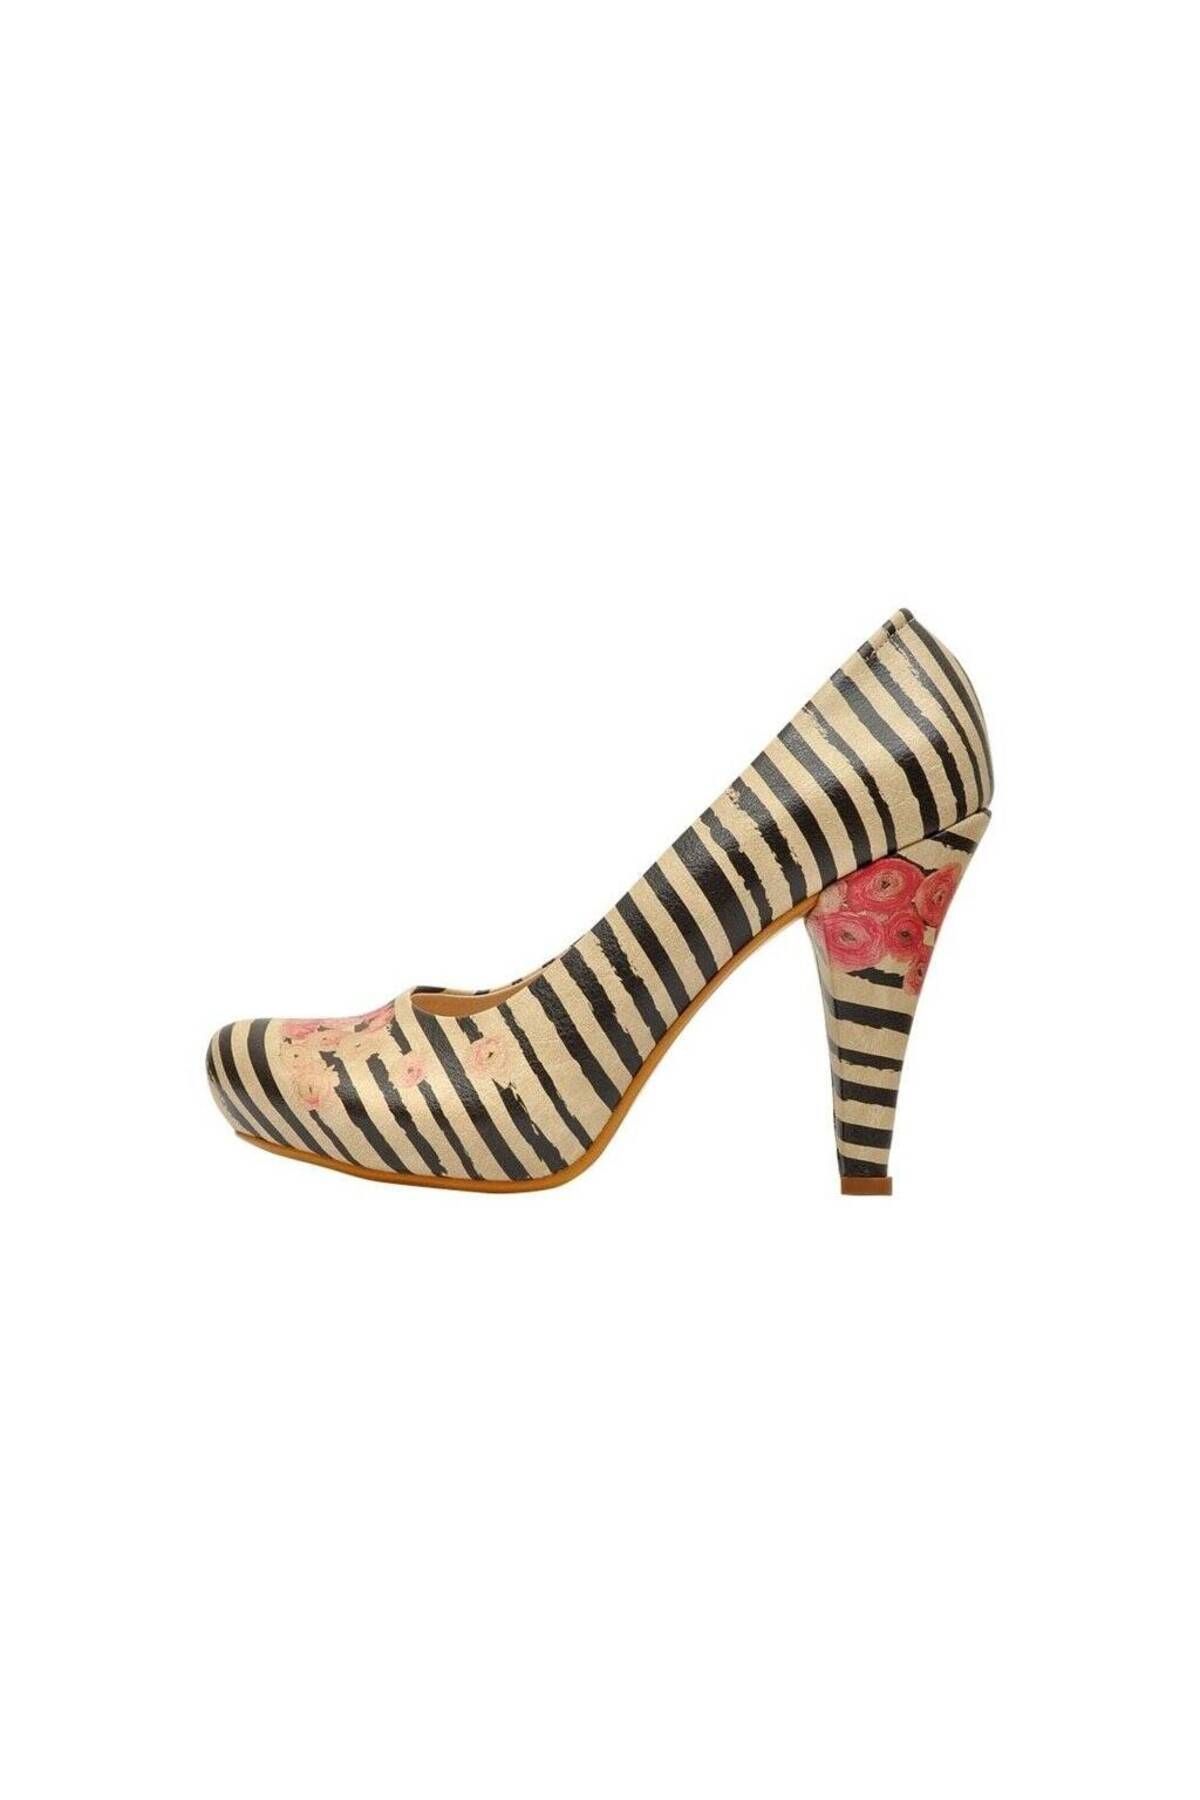 Dogo Kadın Vegan Deri Bej Topuklu Ayakkabı - Roses On Stripes Tasarım